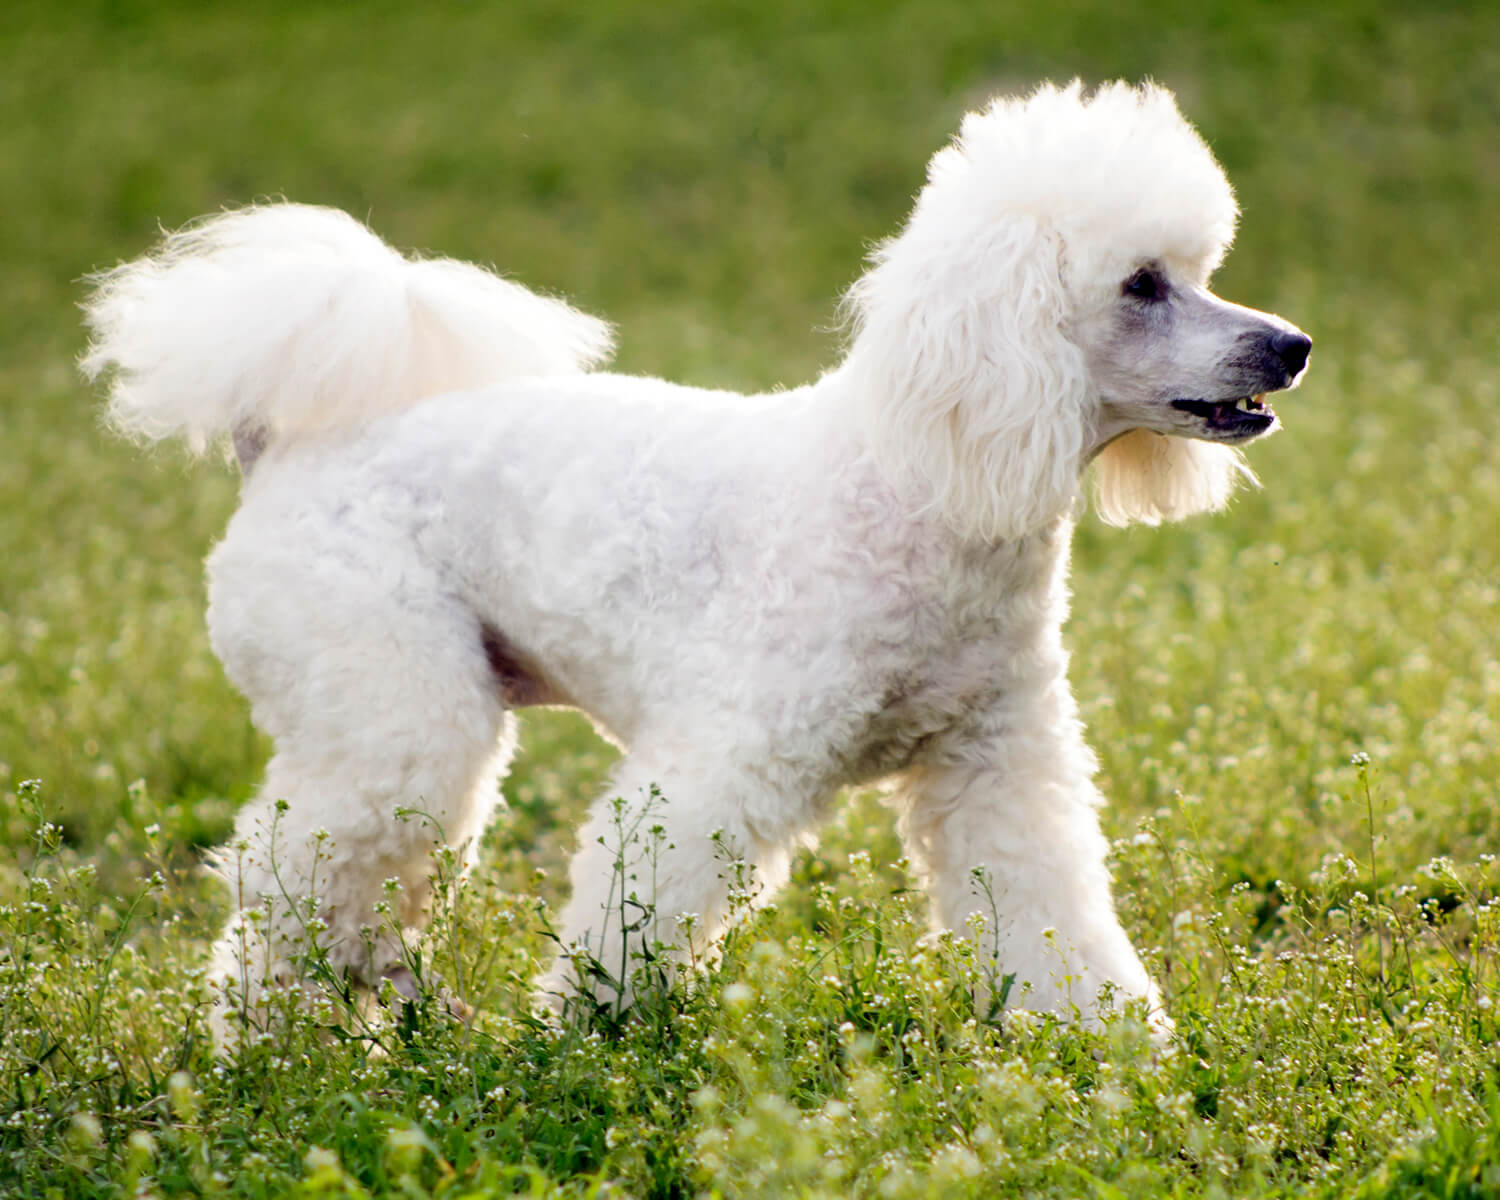 Пудель (Poodle) - элегантная, гордая, умная порода собак. Фото пуделя,  описание породы, цены, отзывы владельцев